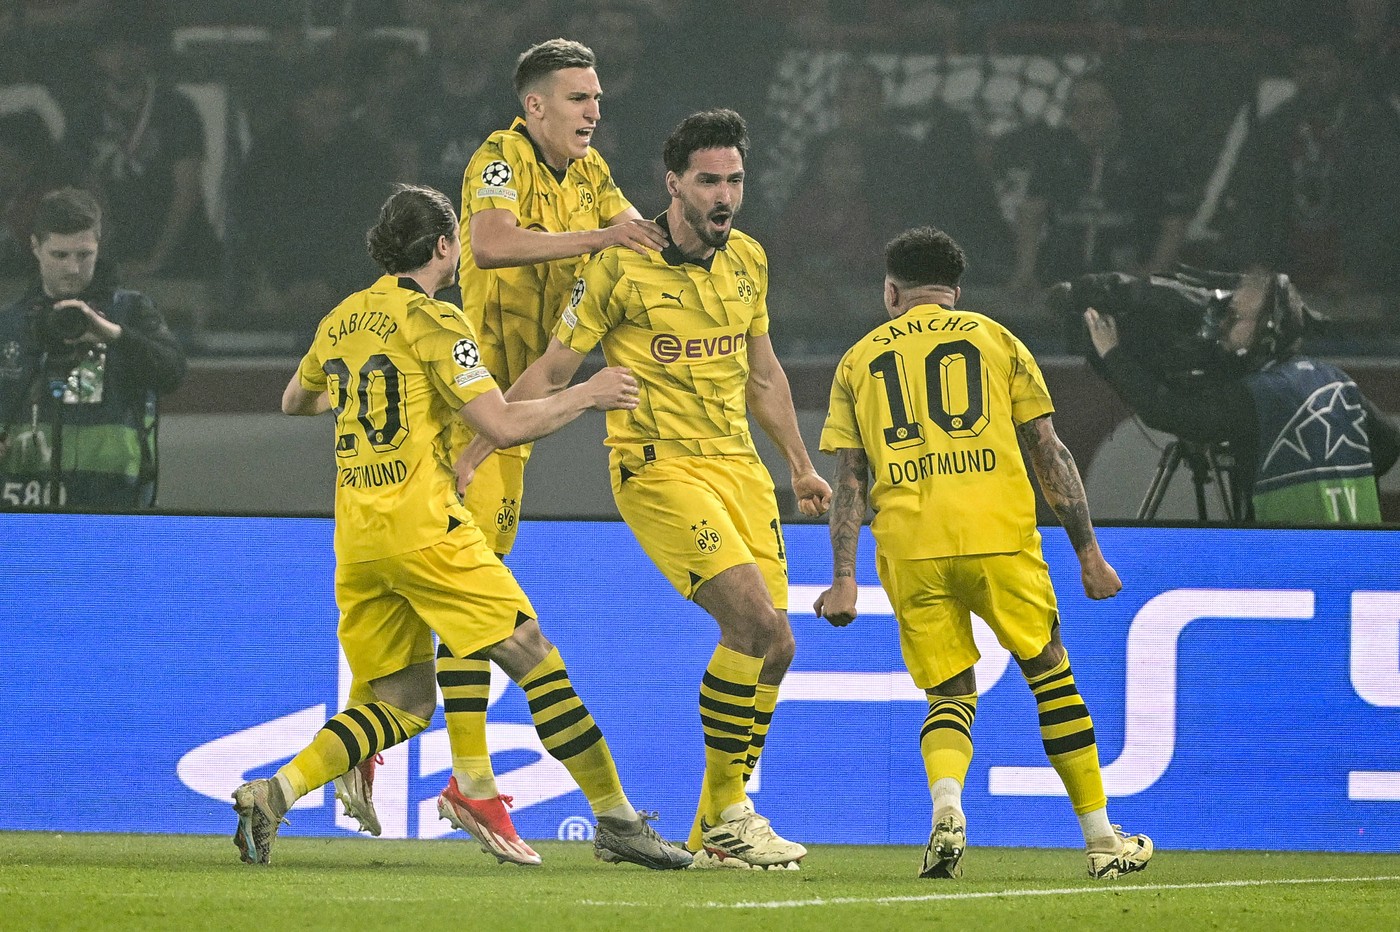 PSG - Borussia Dortmund 0-1. Nemții s-au calificat în finala UEFA Champions League, după 11 ani